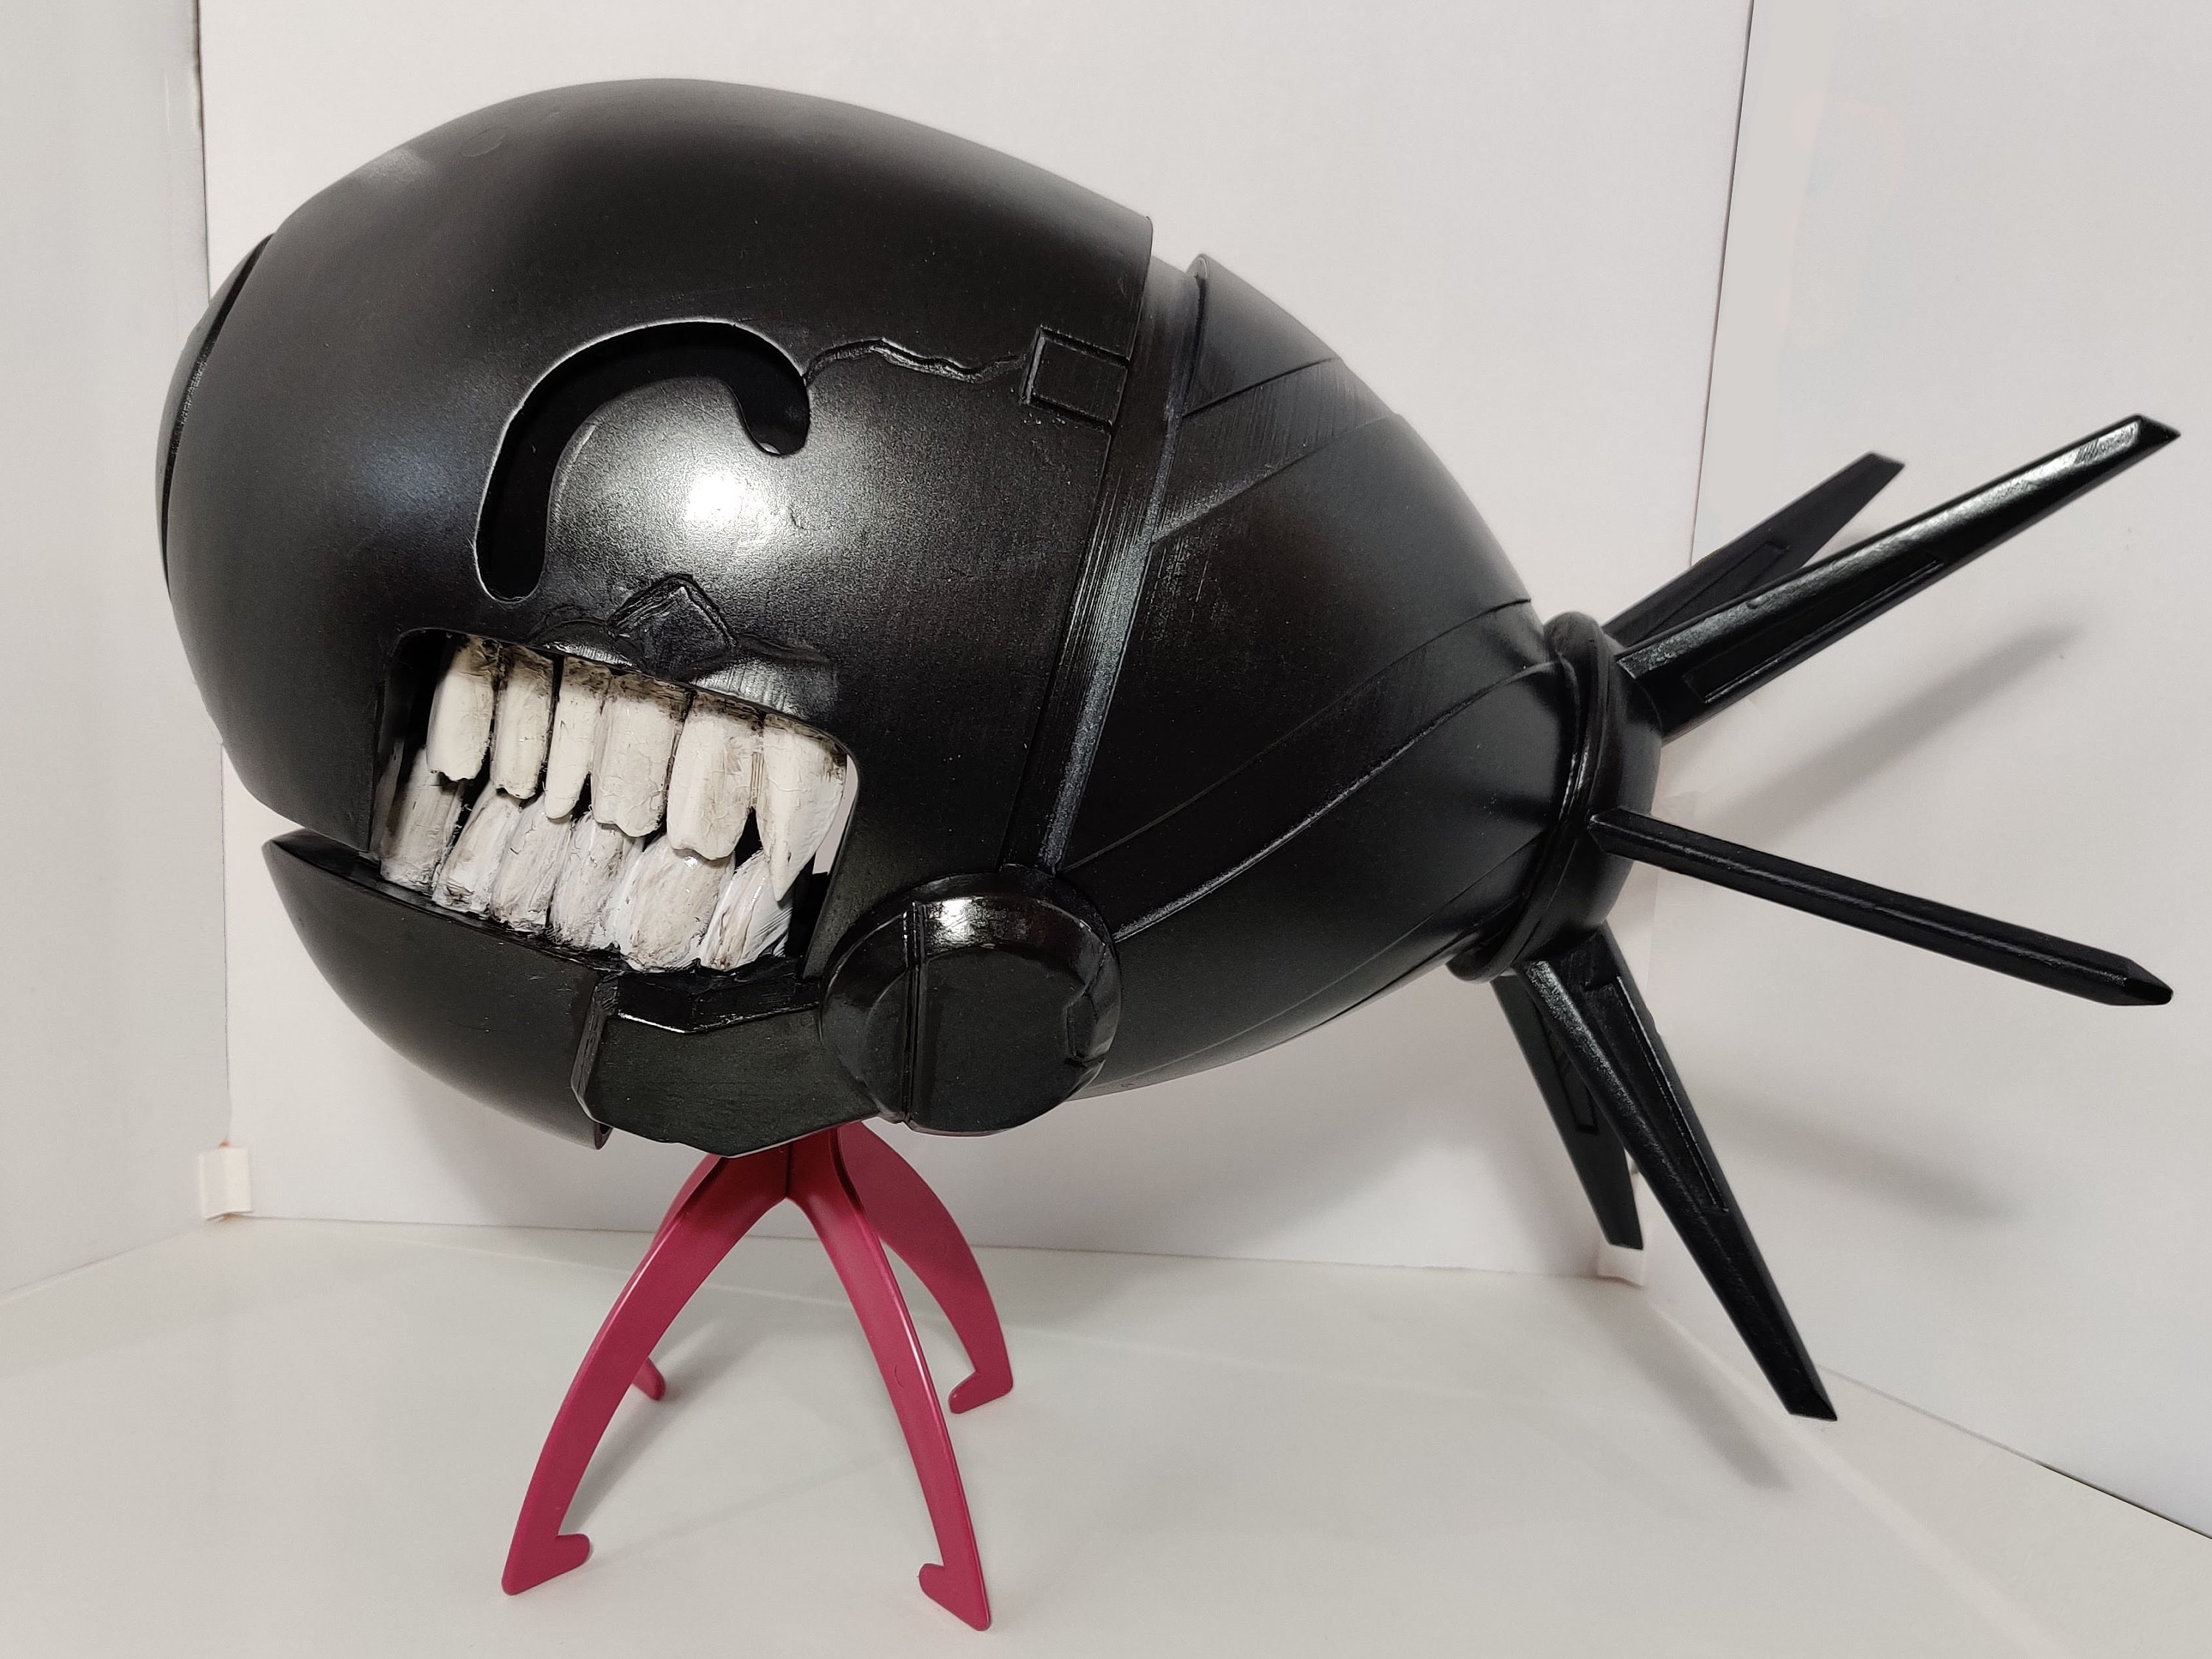 Chainsaw Helmet, Bomb Devil Helmet, Halloween Mask 